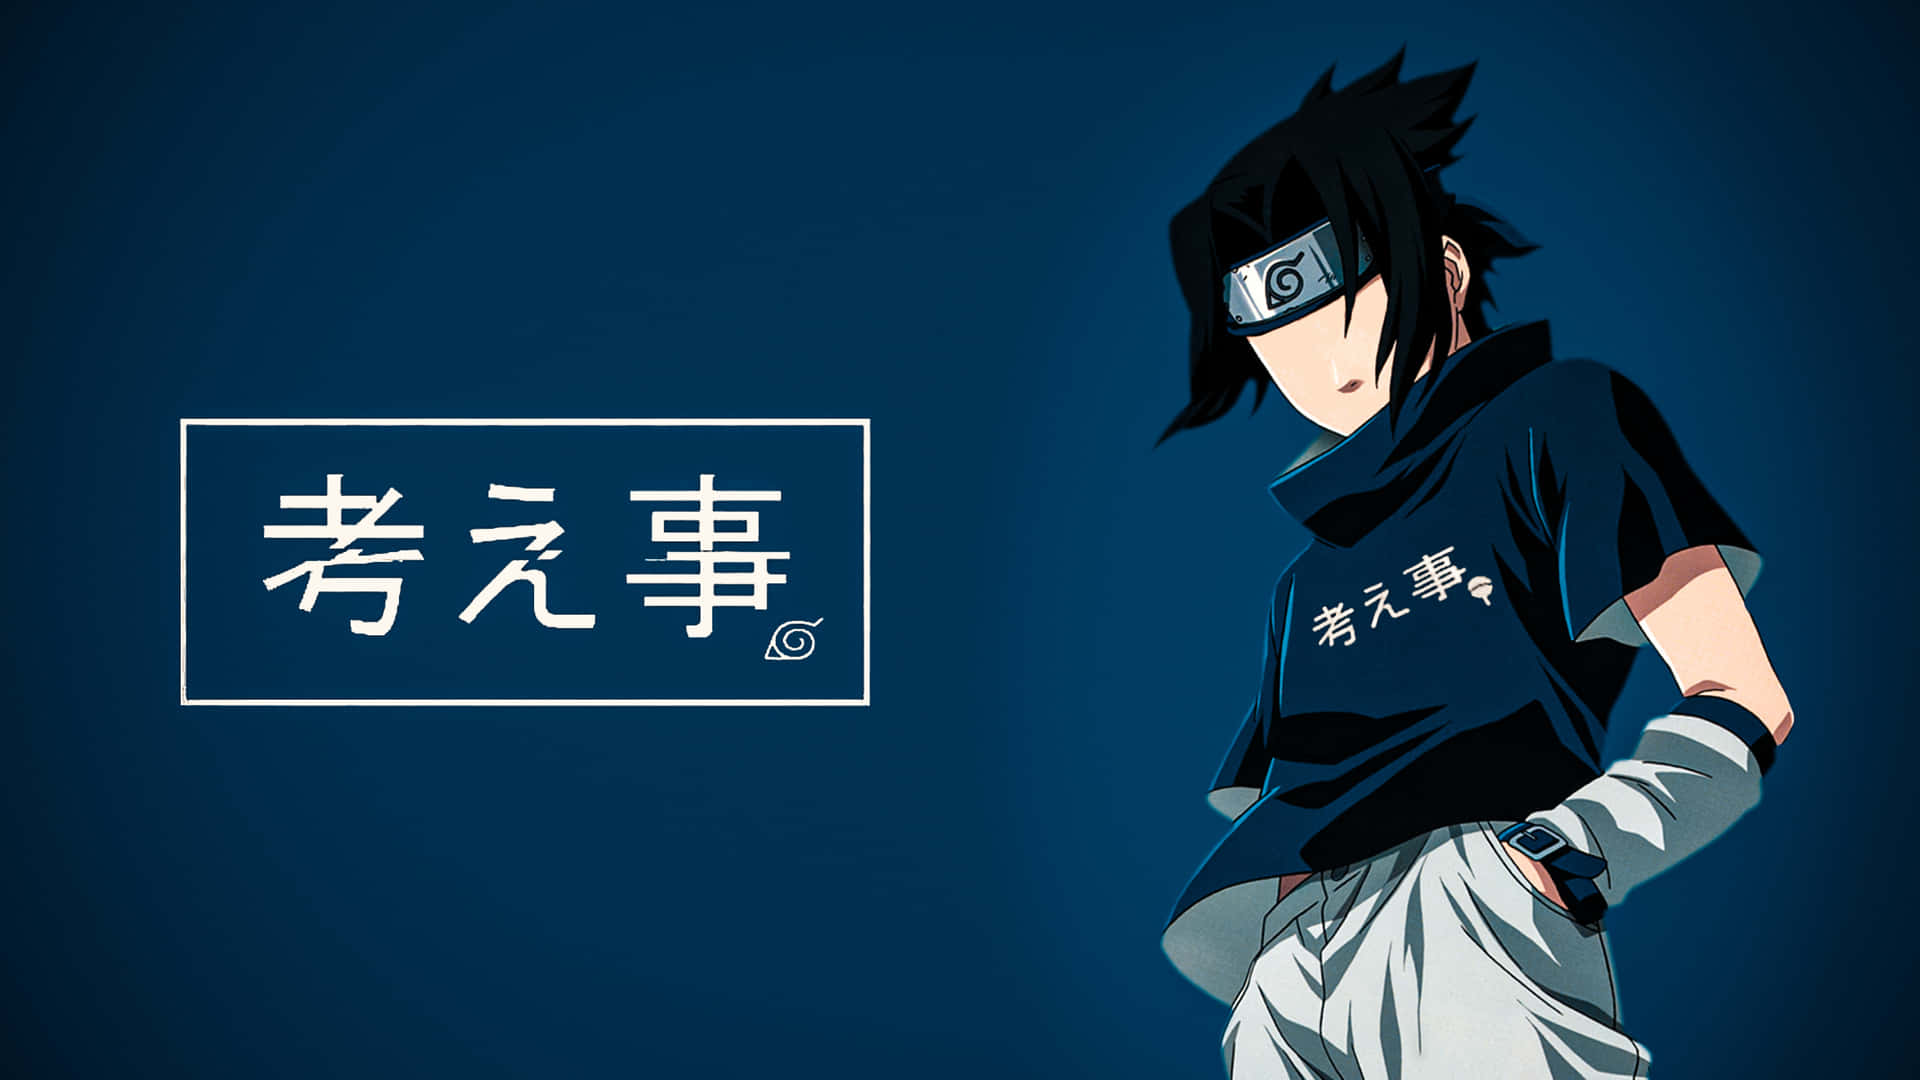 Eineblaue Version Von Sasuke, Dem Helden Aus Der Anime-serie Naruto. Wallpaper